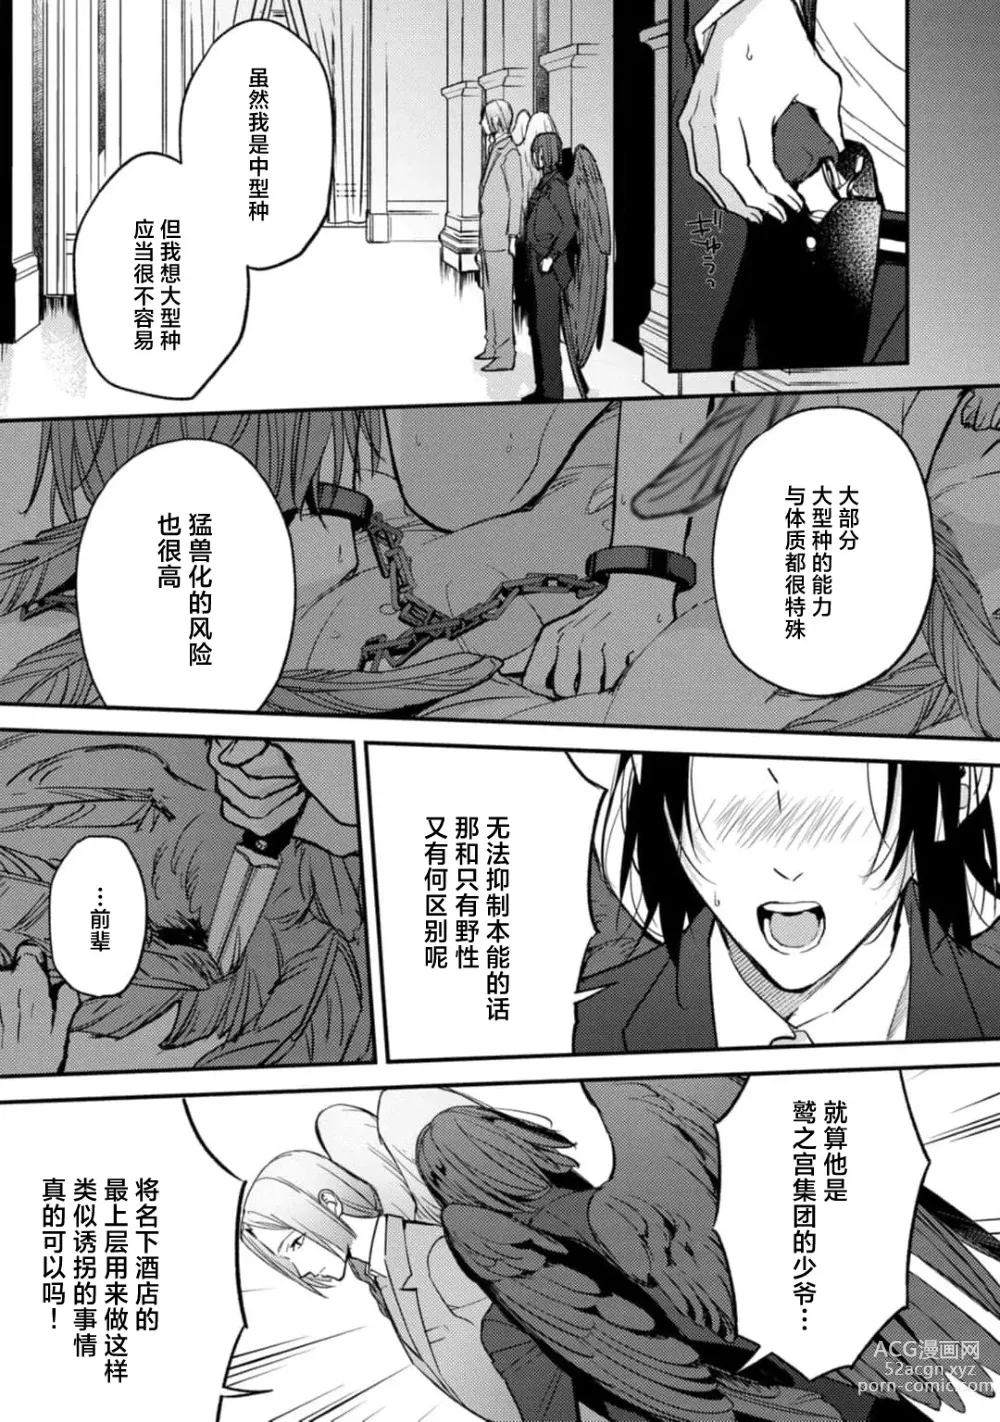 Page 6 of manga 枭与夜想曲 act. 1